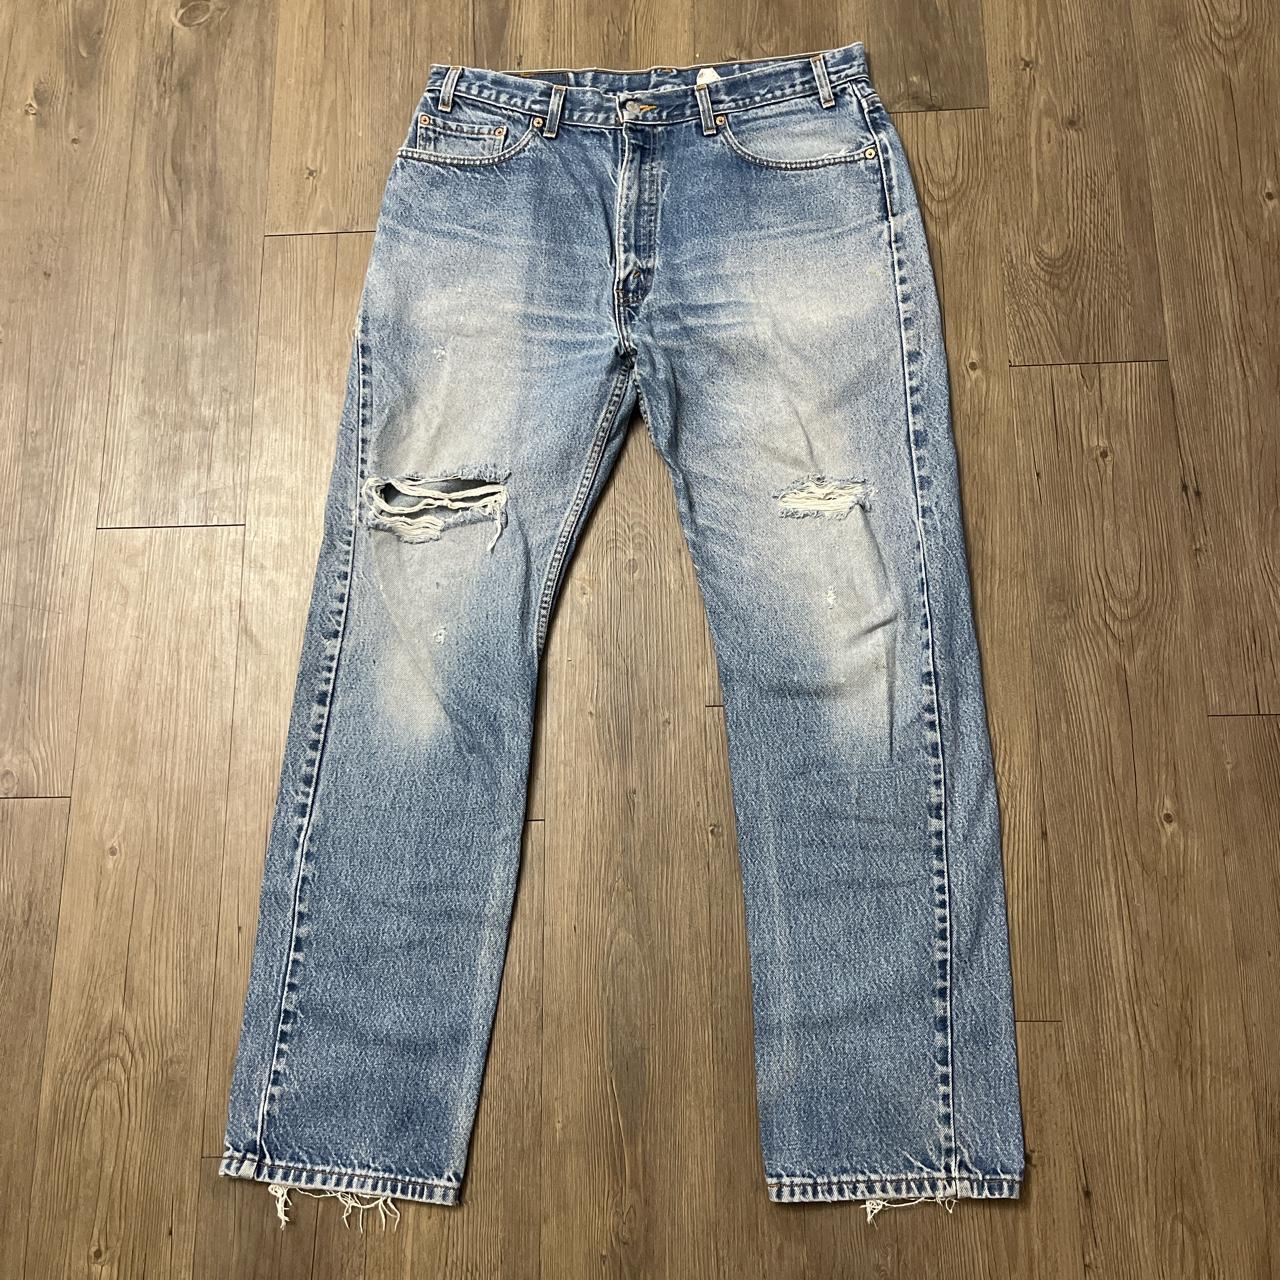 Vintage Levi’s 505 Distressed Light Blue Denim Jeans... - Depop